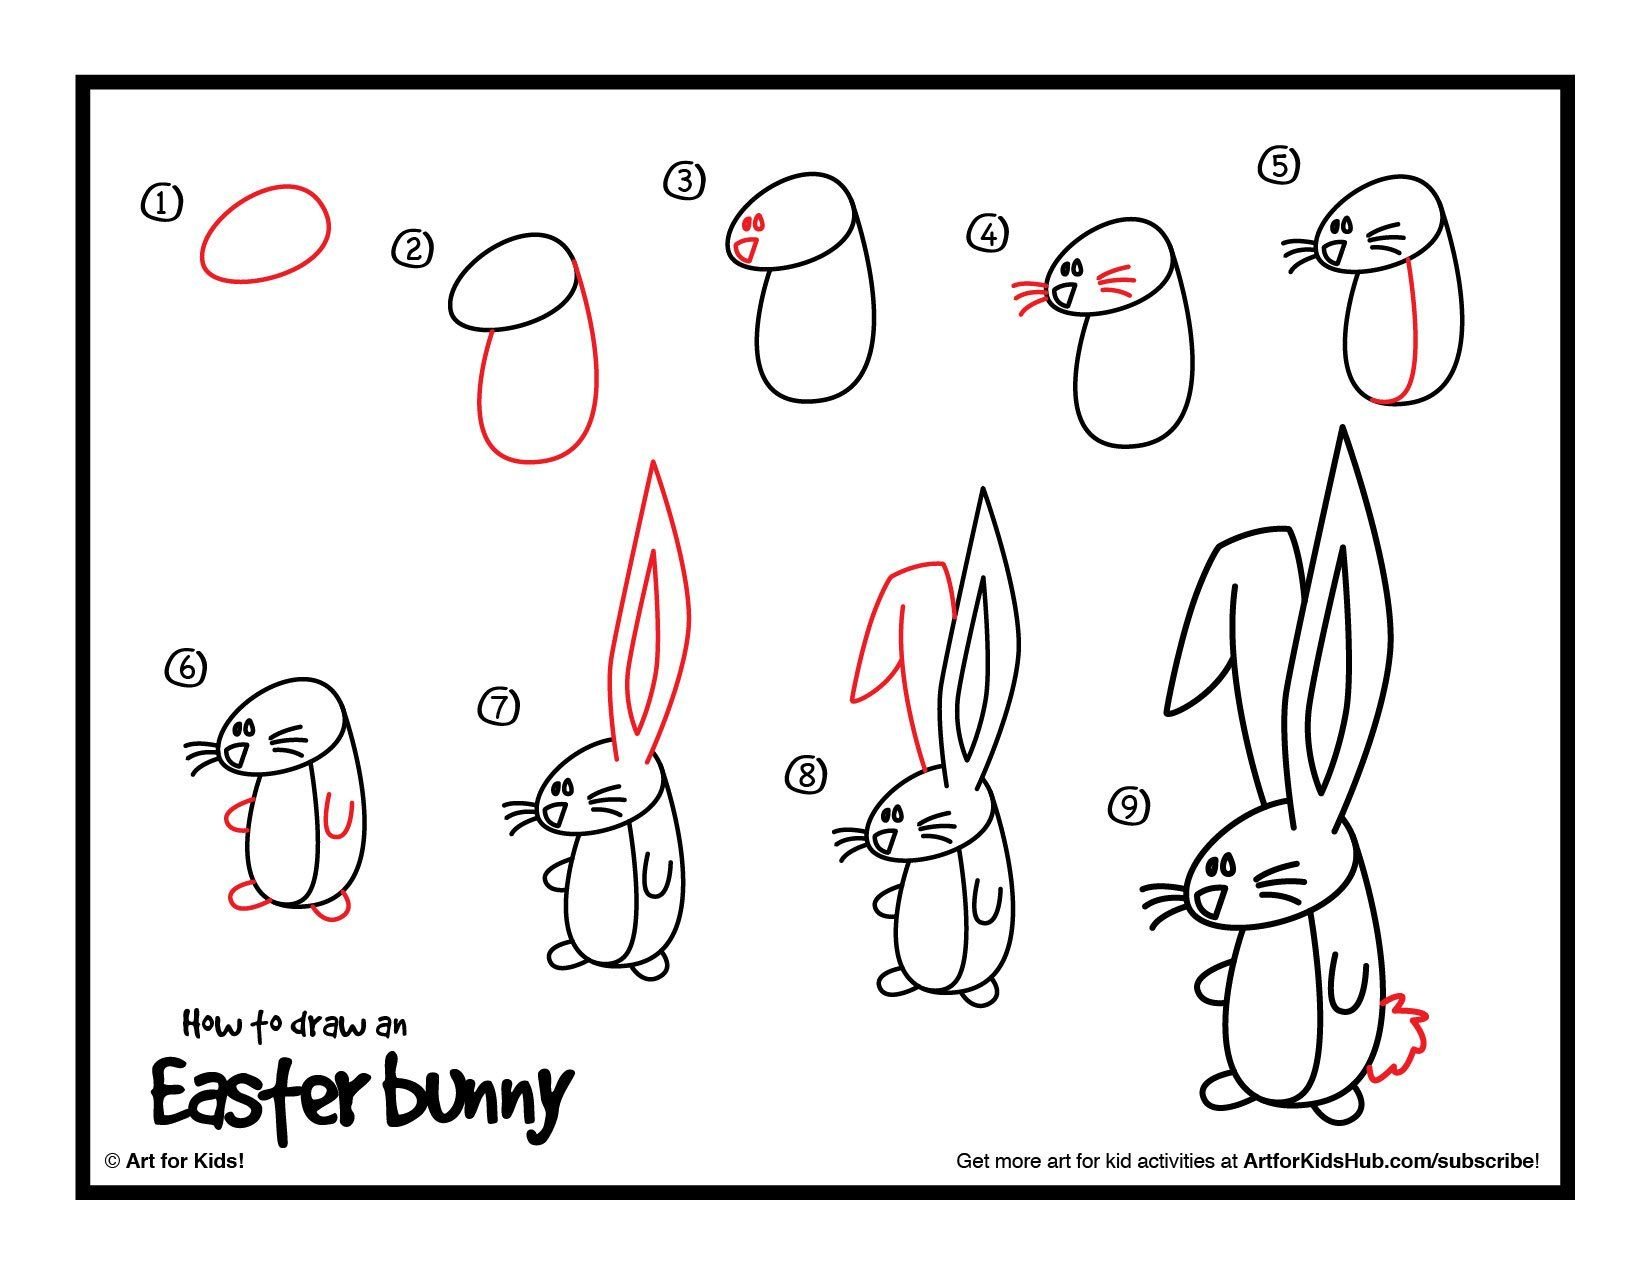 Рисунок кролика поэтапно